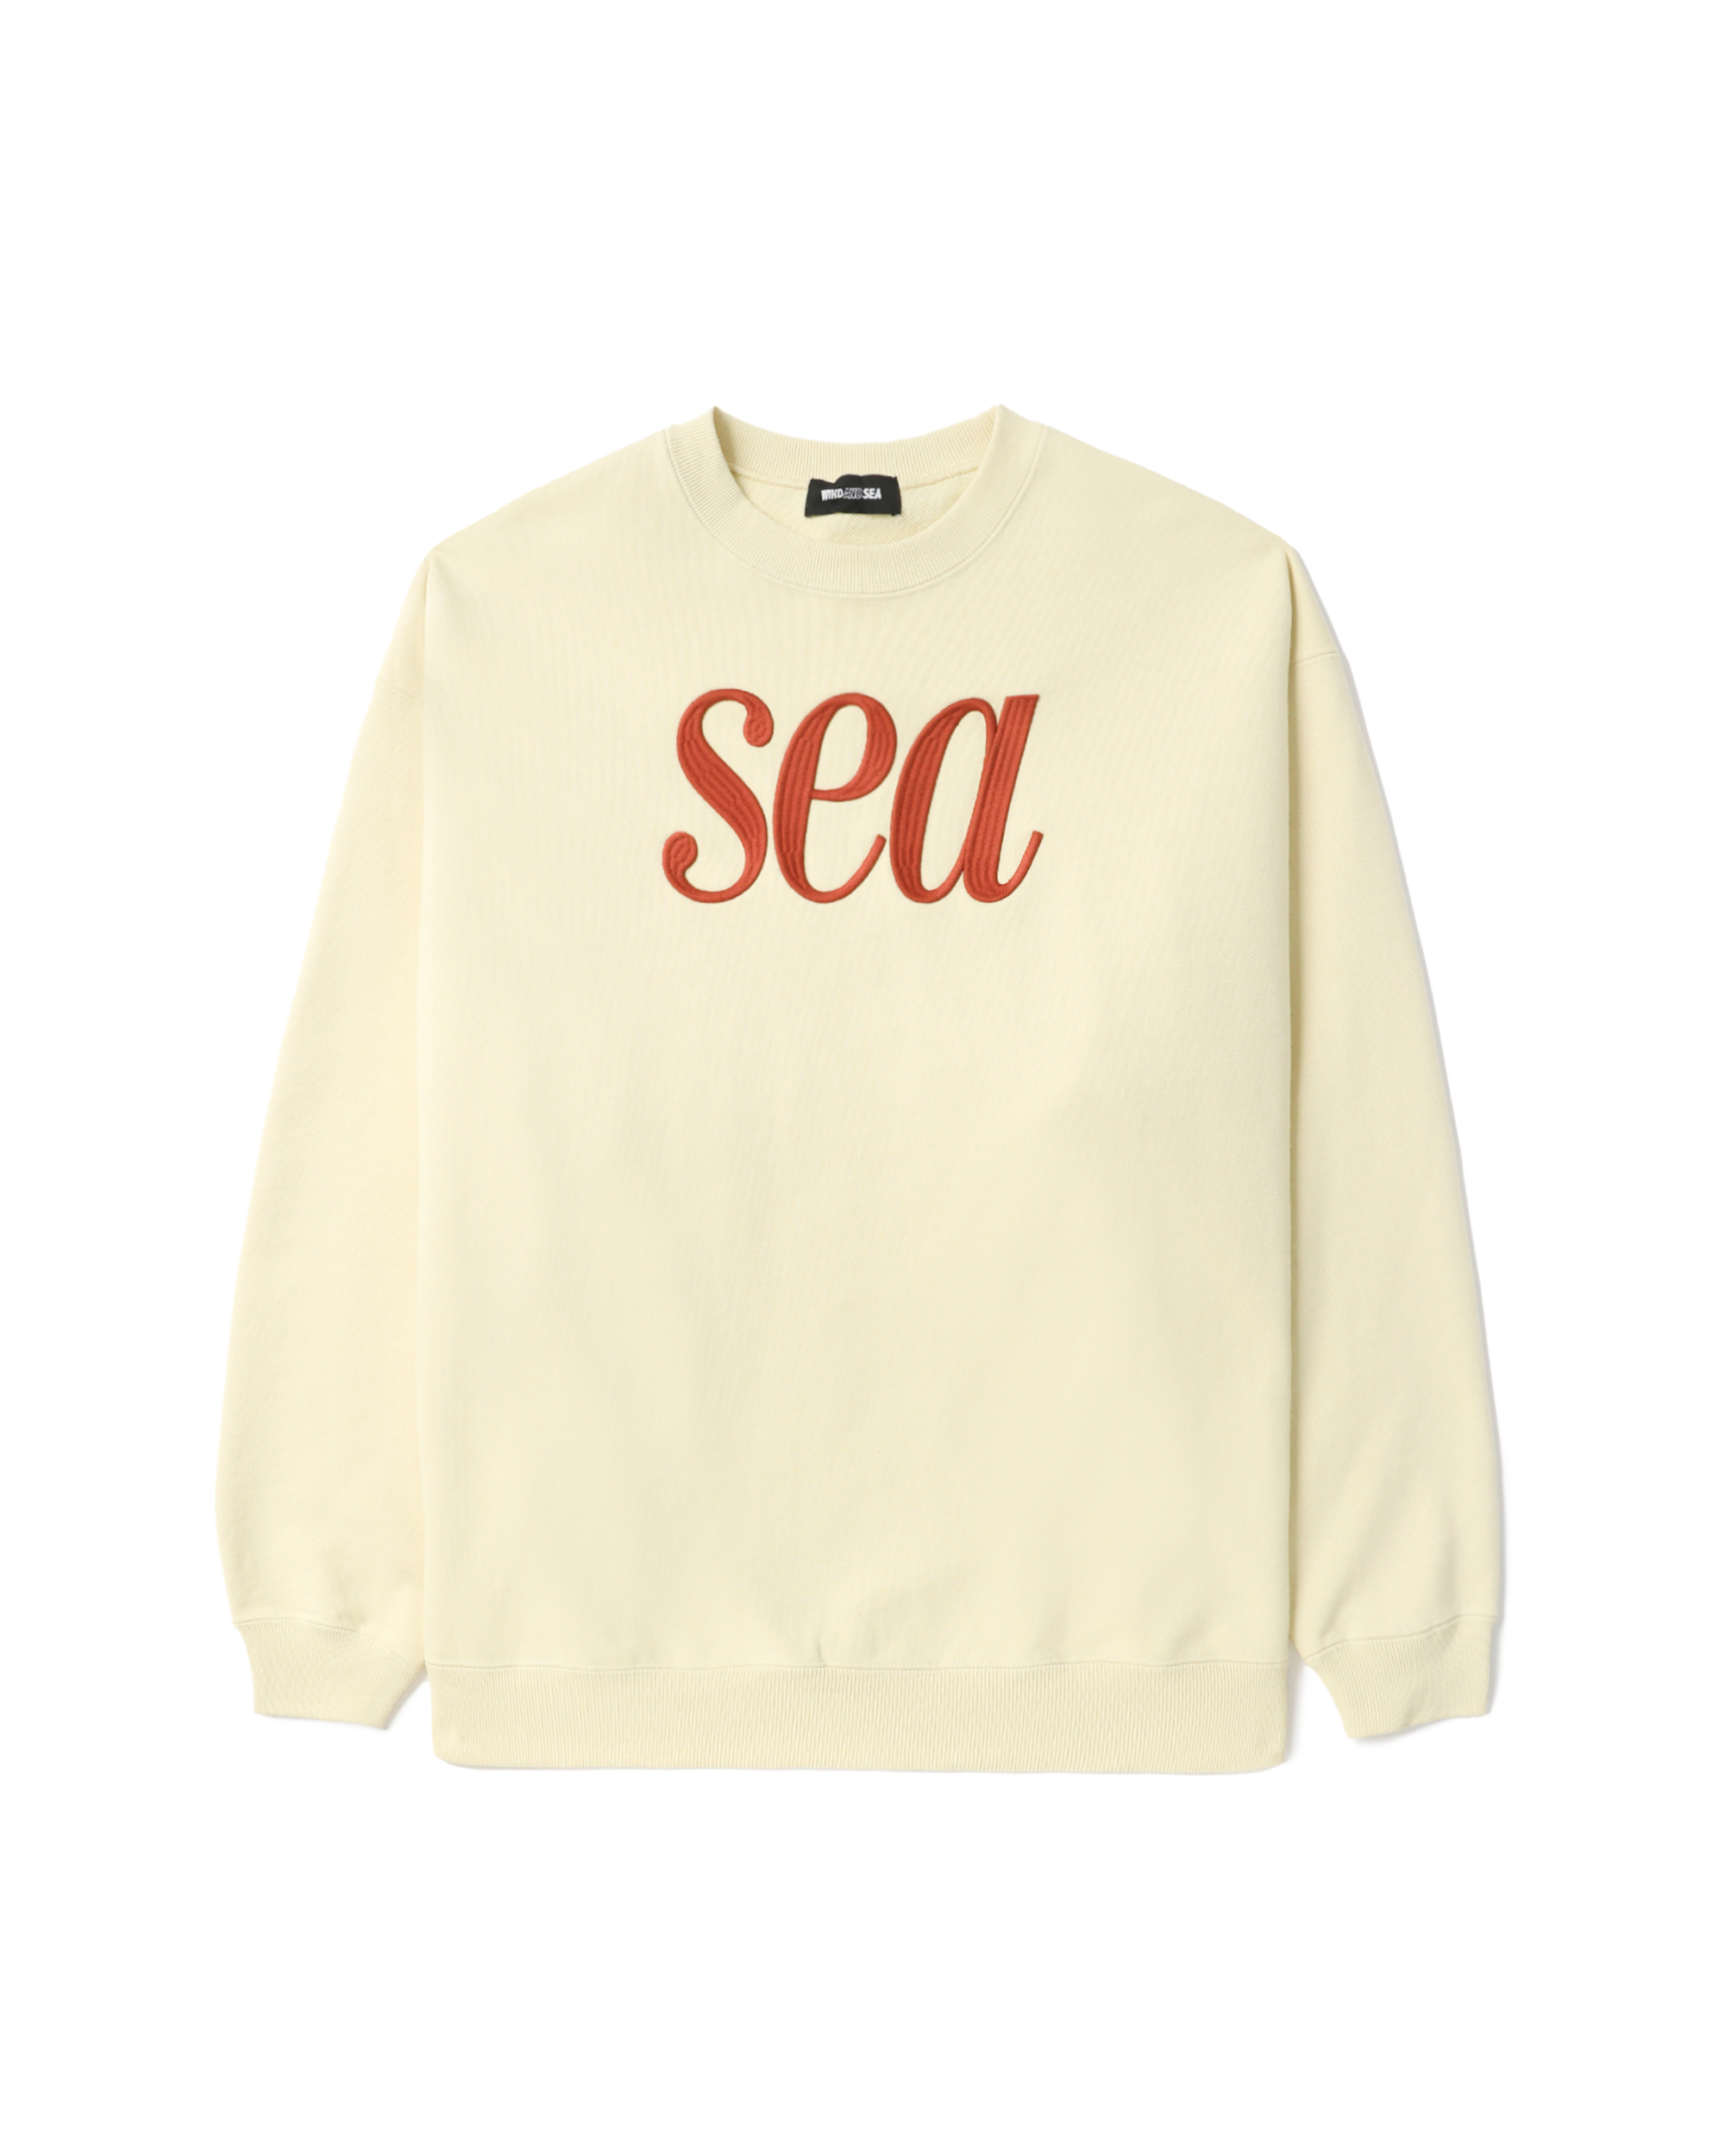 SEA sweatshirt